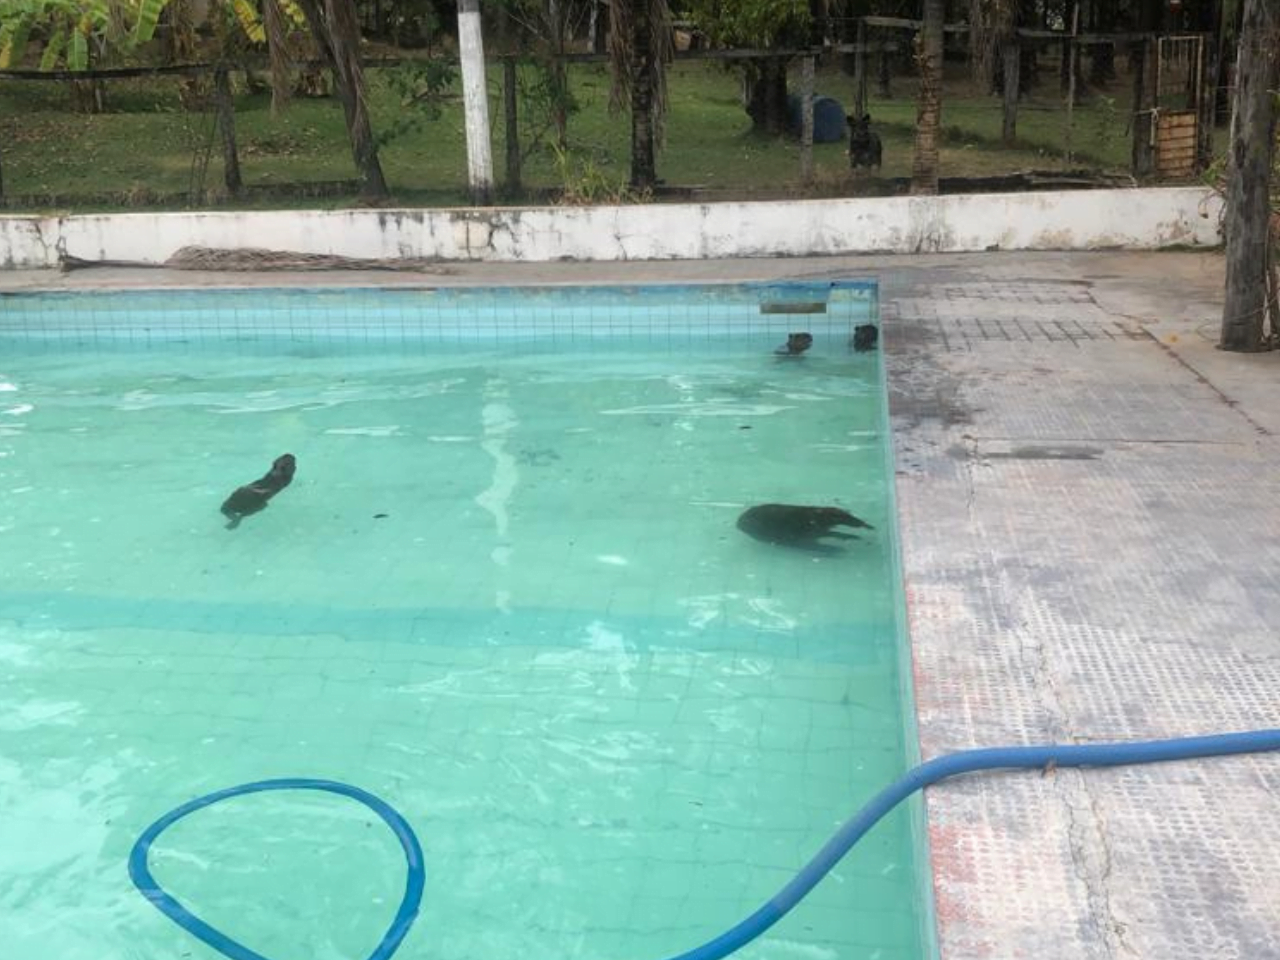 Capivaras usam piscina para se refrescarem do calor